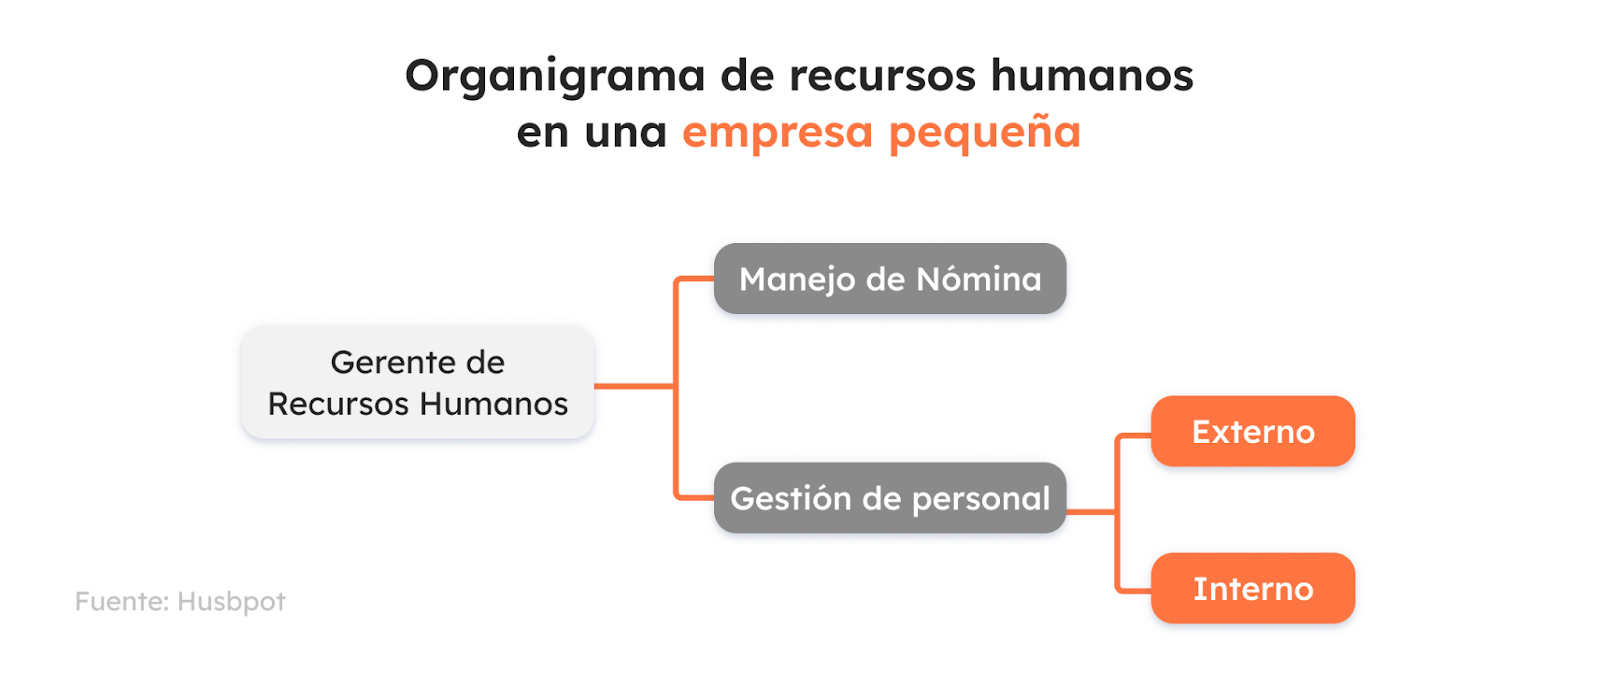 organigrama de recursos humanos